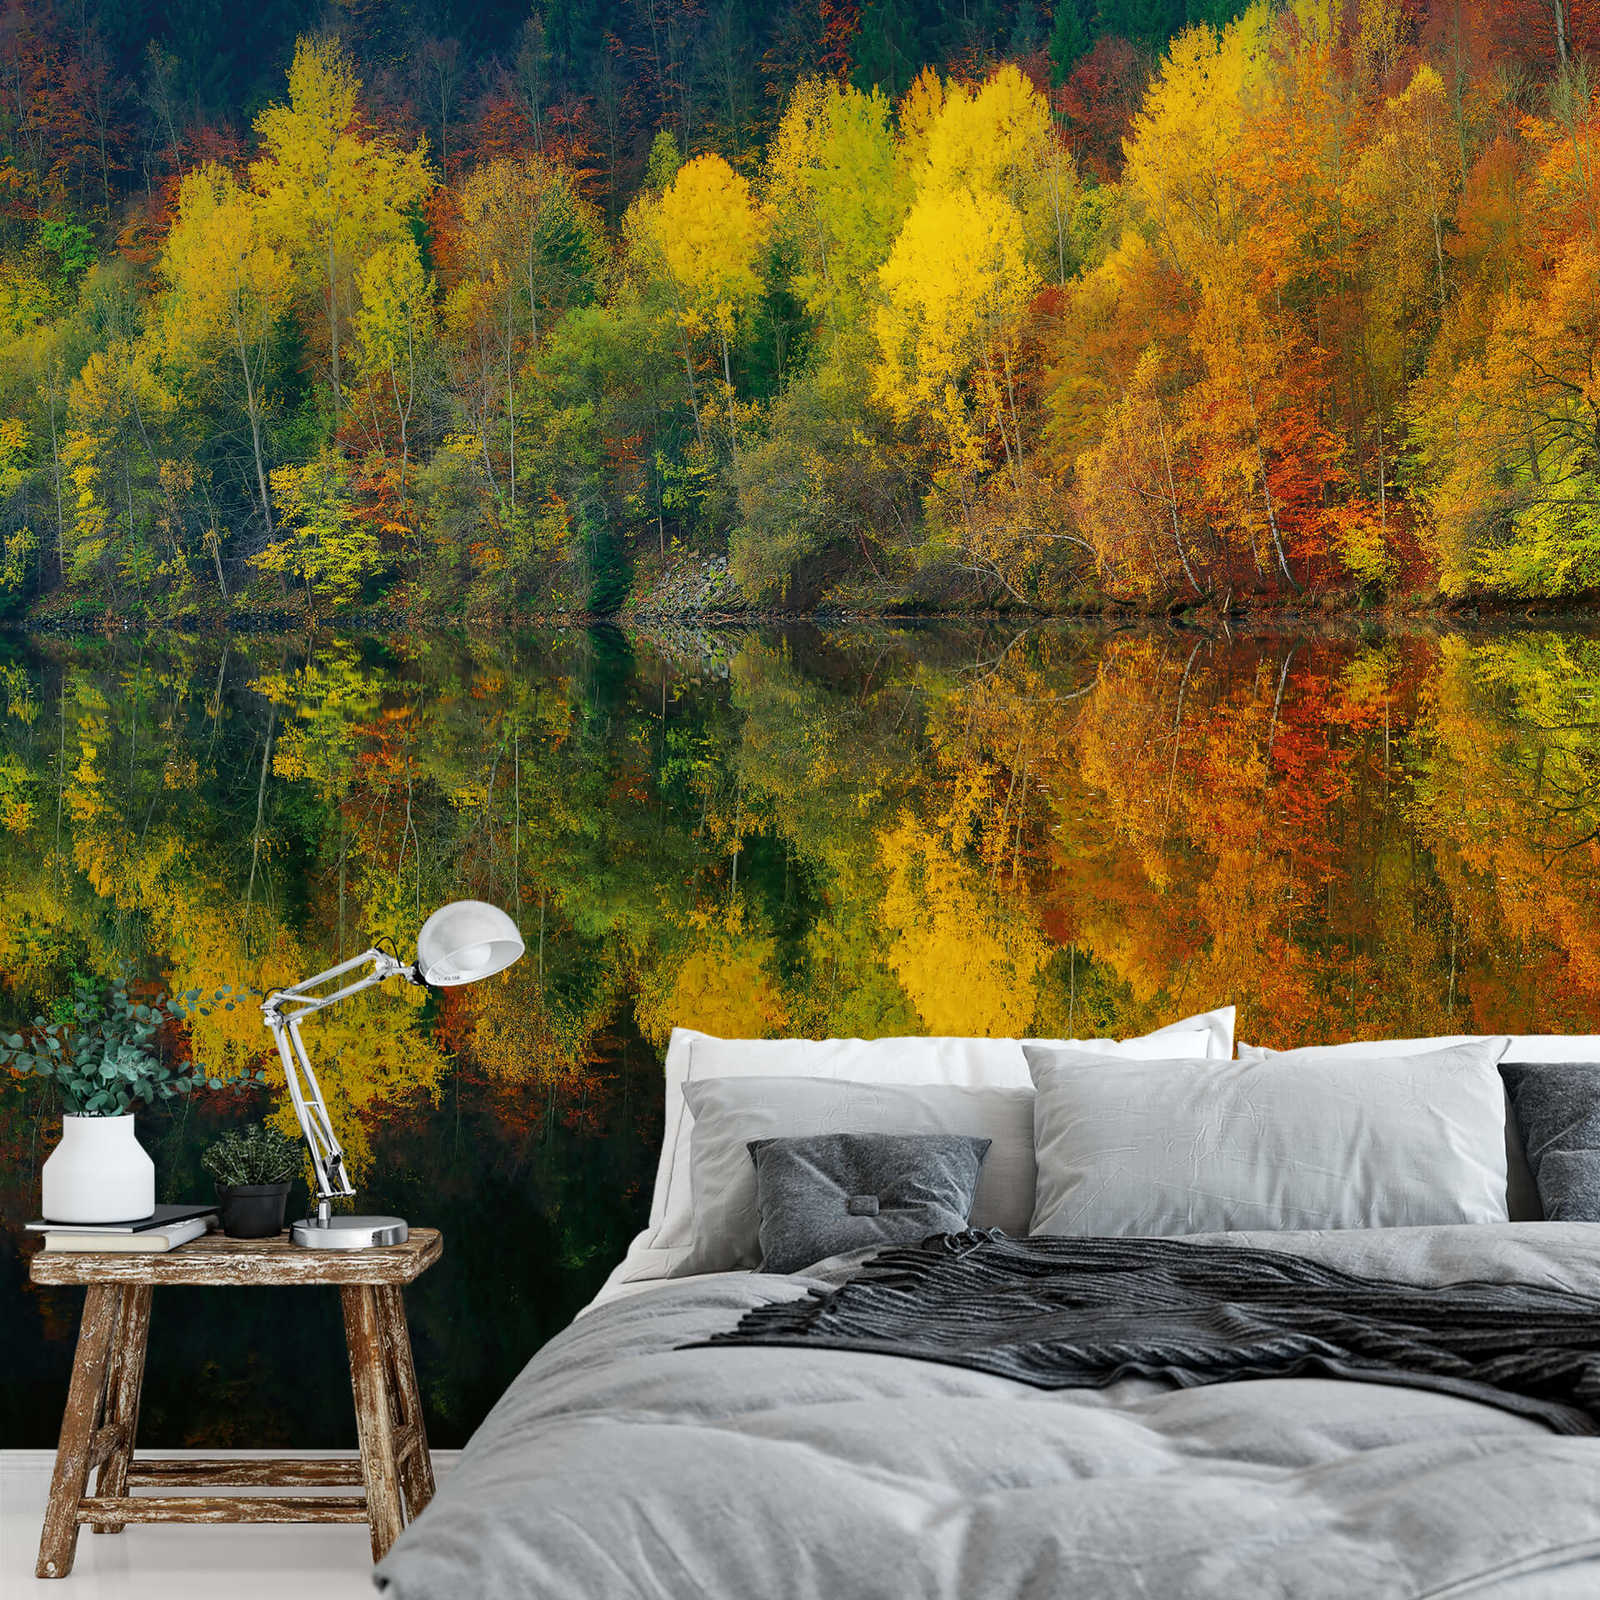             Fotomurali Foresta sul lago in autunno - Giallo, arancione, verde
        